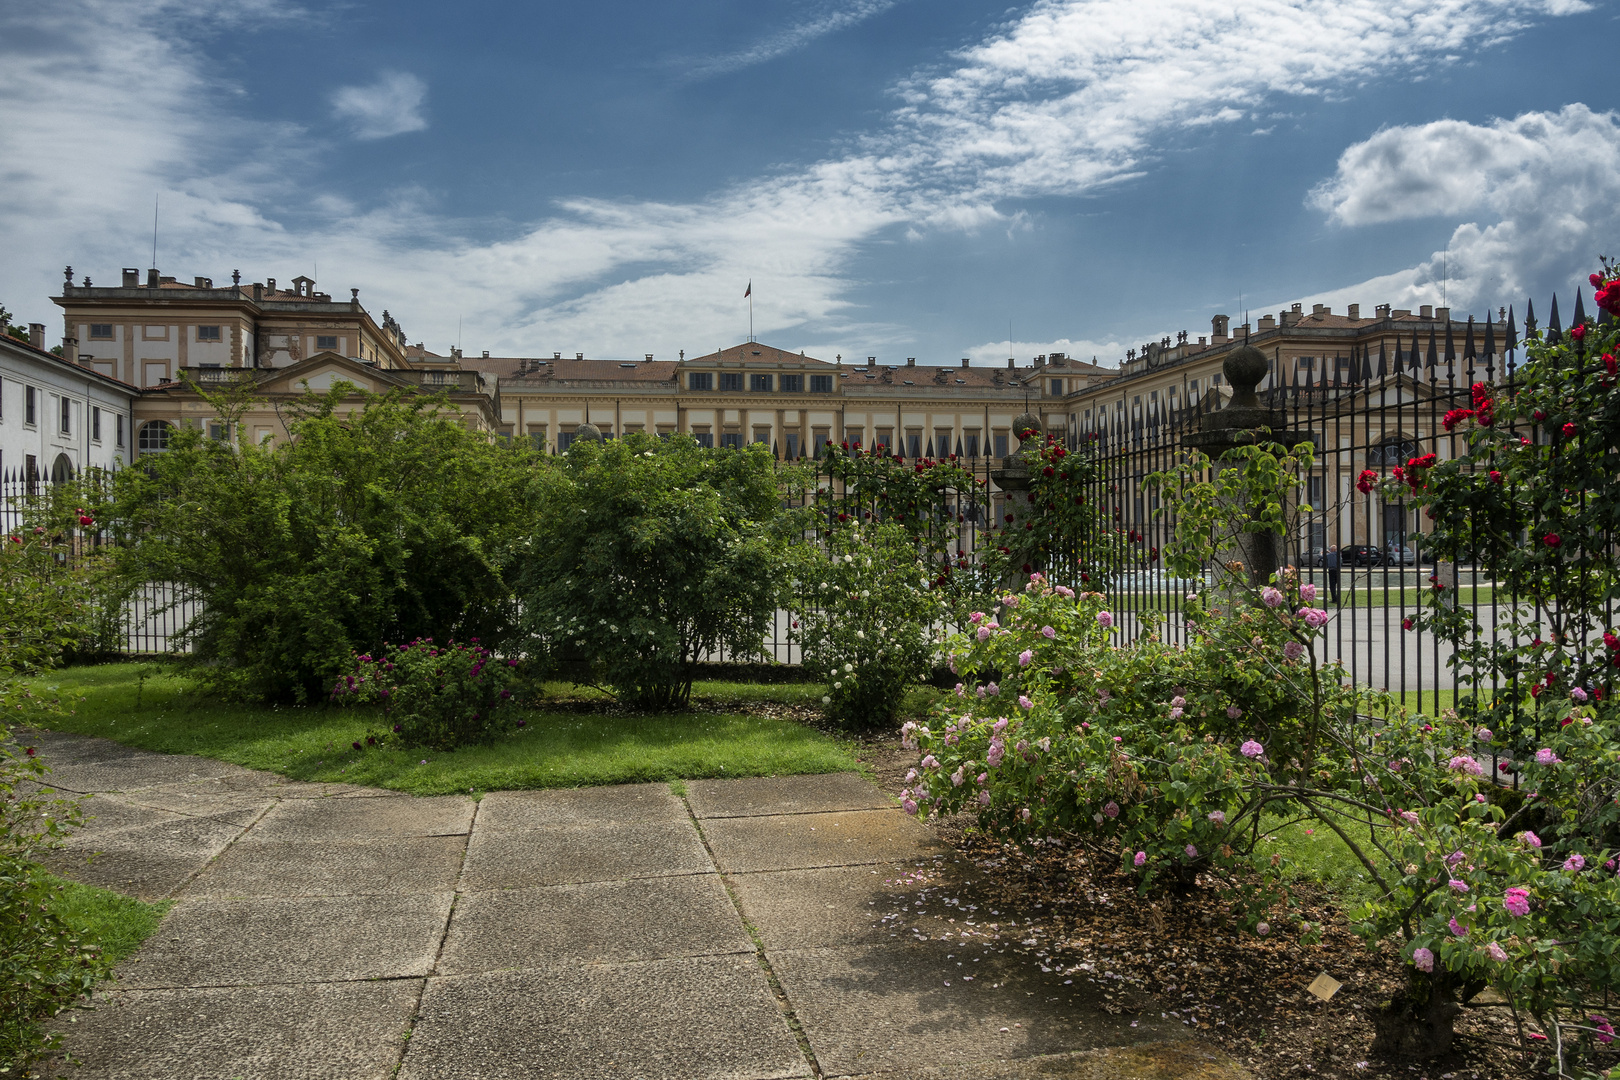 Vista dal roseto, villa Reale di Monza